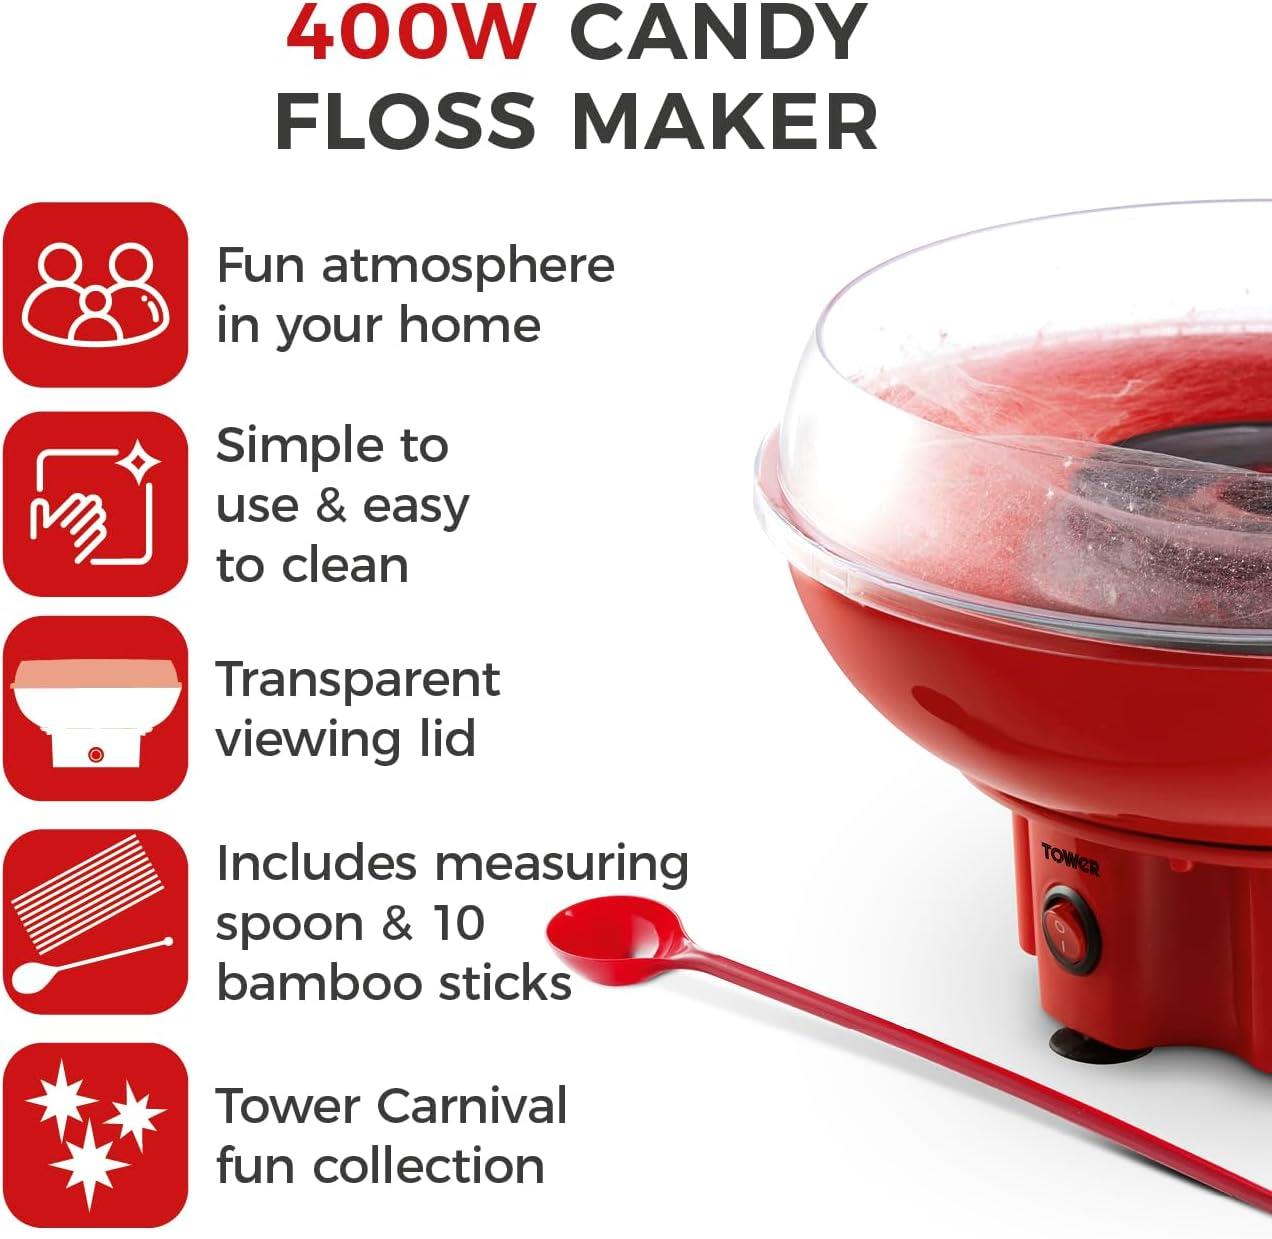 Tower 400W Candy Floss Maker